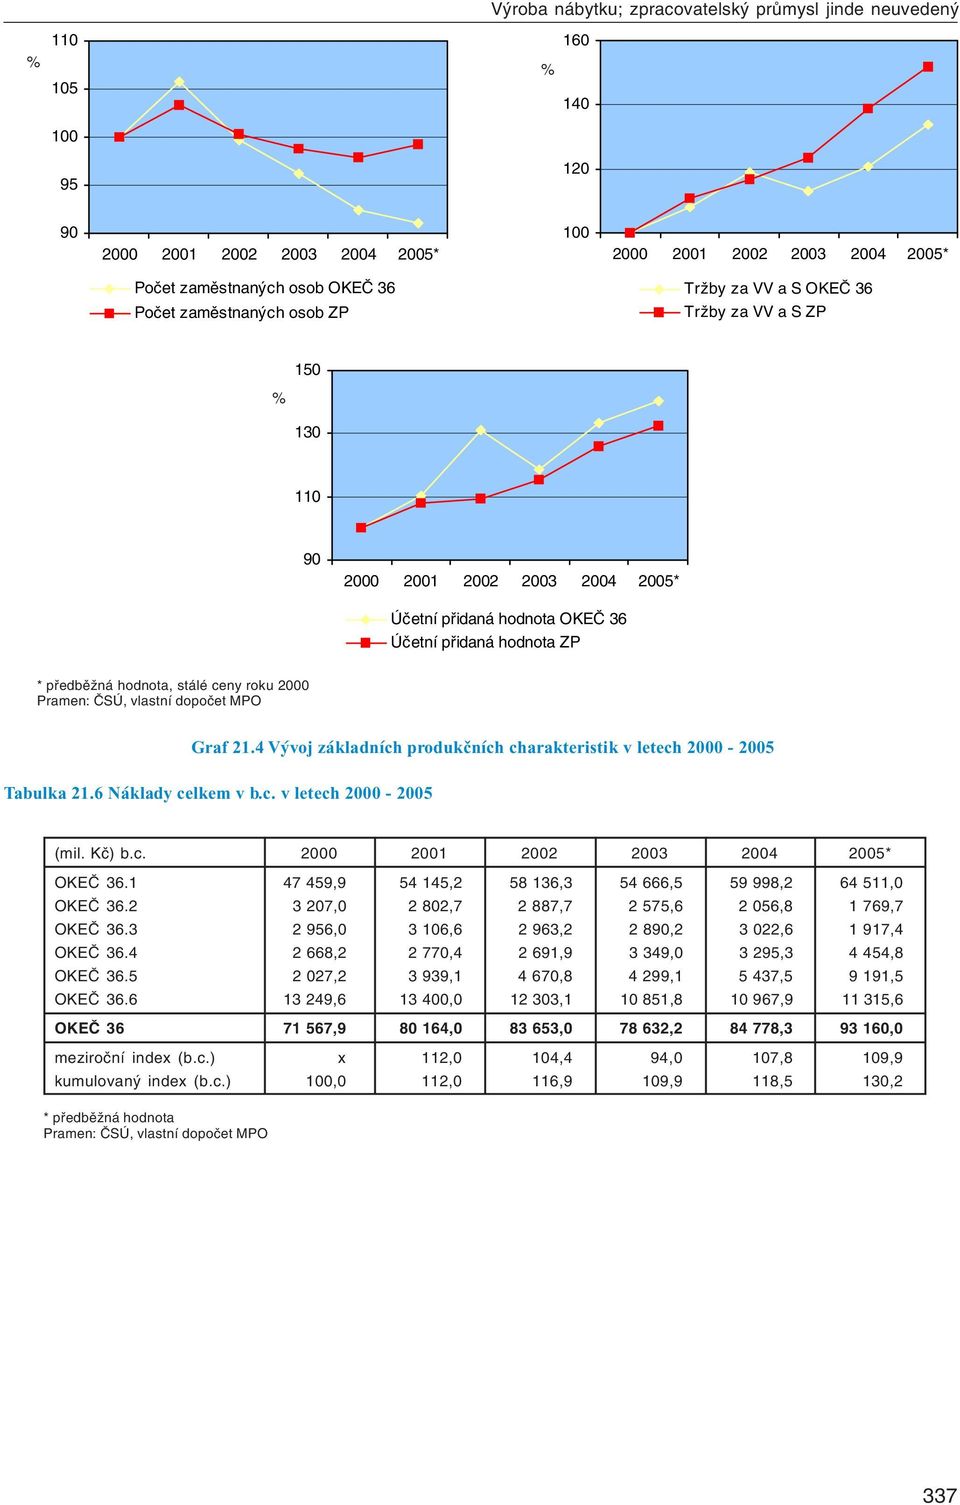 2000 Graf 21.4 Vývoj základních produkčních charakteristik v letech 2000-2005 Tabulka 21.6 Náklady celkem v b.c. v letech 2000-2005 (mil. Kč) b.c. 2000 2001 2002 2003 2004 2005* OKEČ 36.